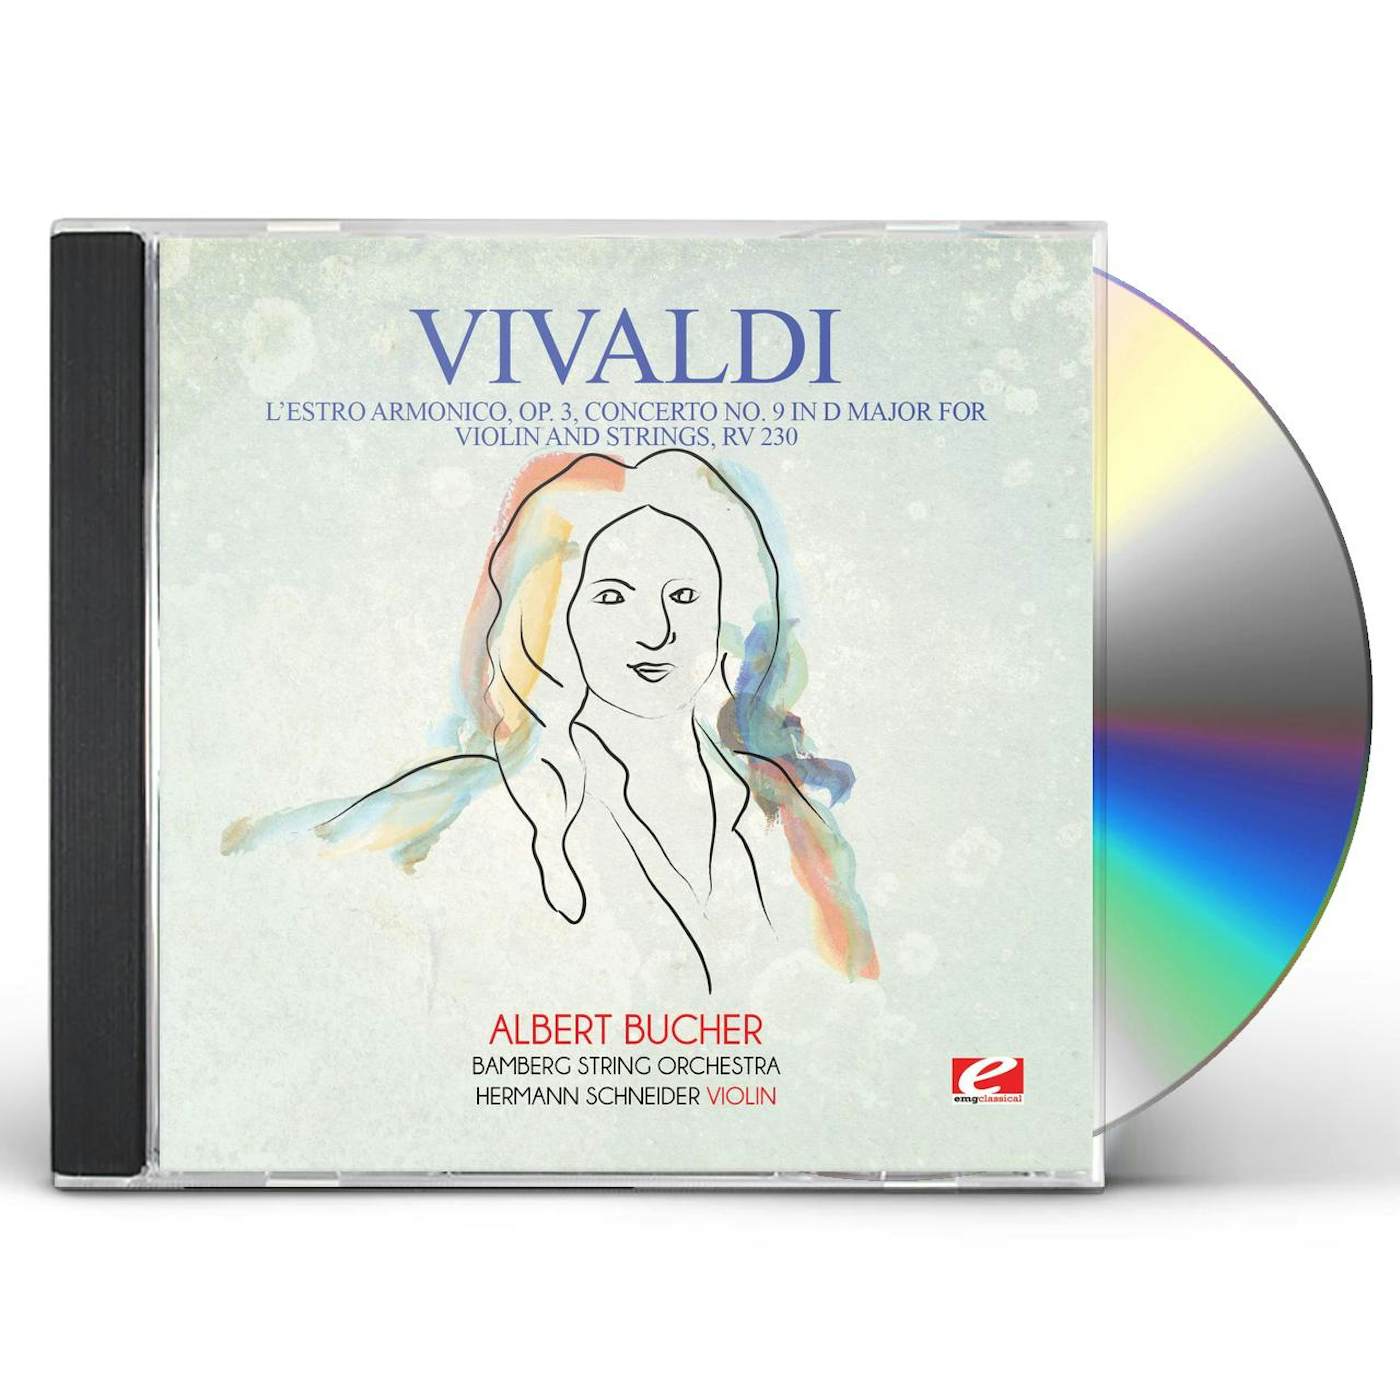 Antonio Vivaldi L'ESTRO ARMONICO OP. 3 CONCERTO NO. 9 IN D MAJOR CD